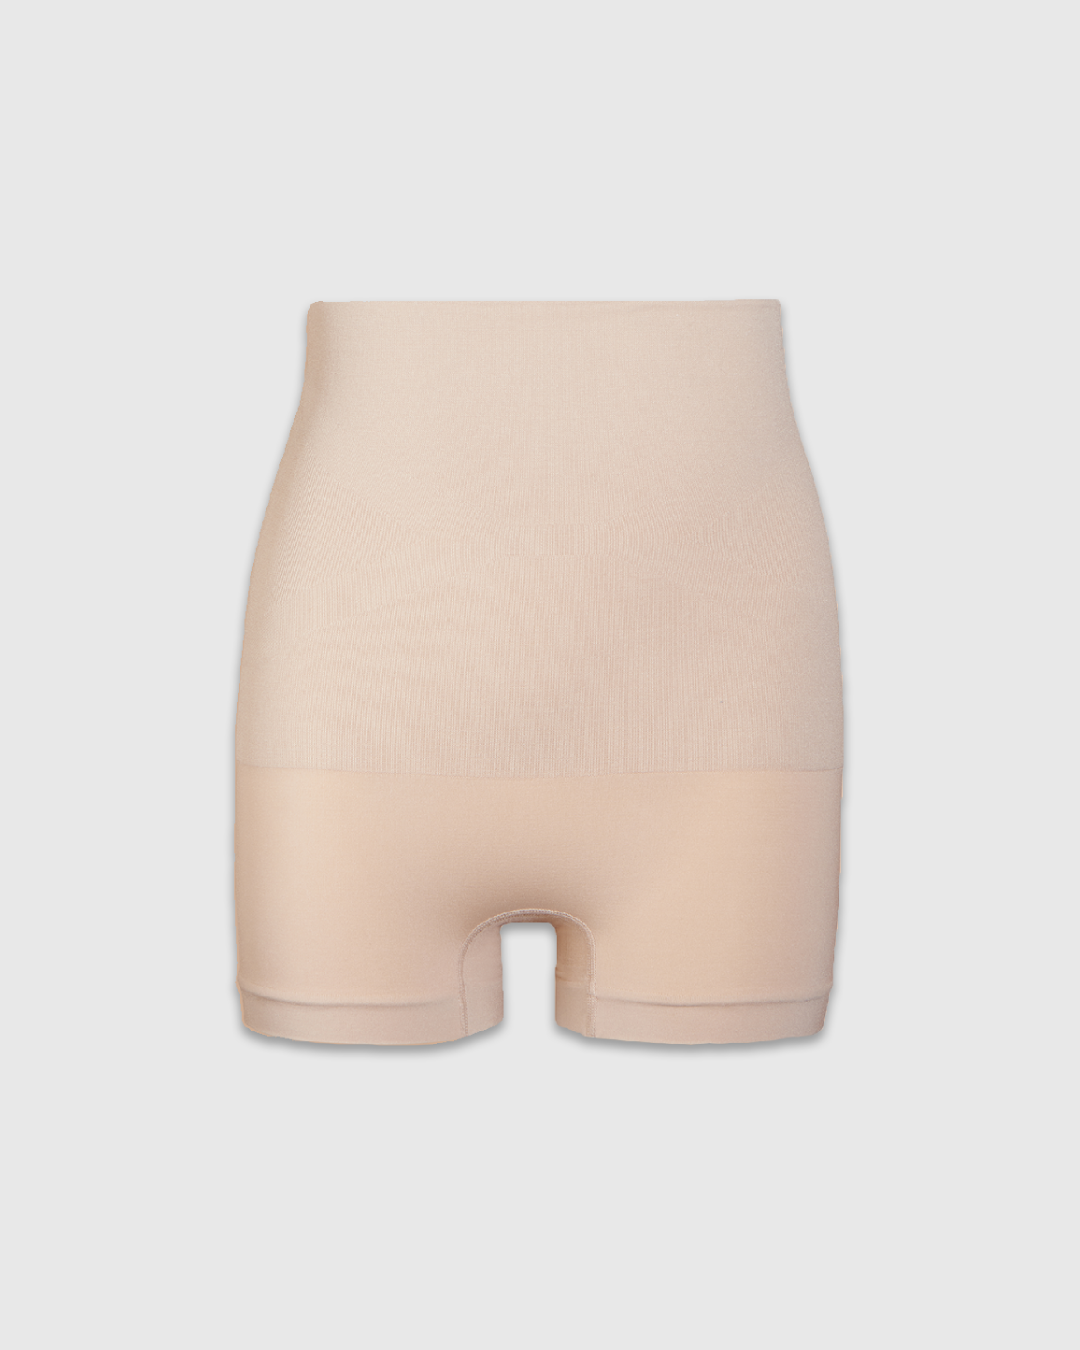 Buy F Fashiol.Com Women's High Waist Spandex Shapewear Tummy